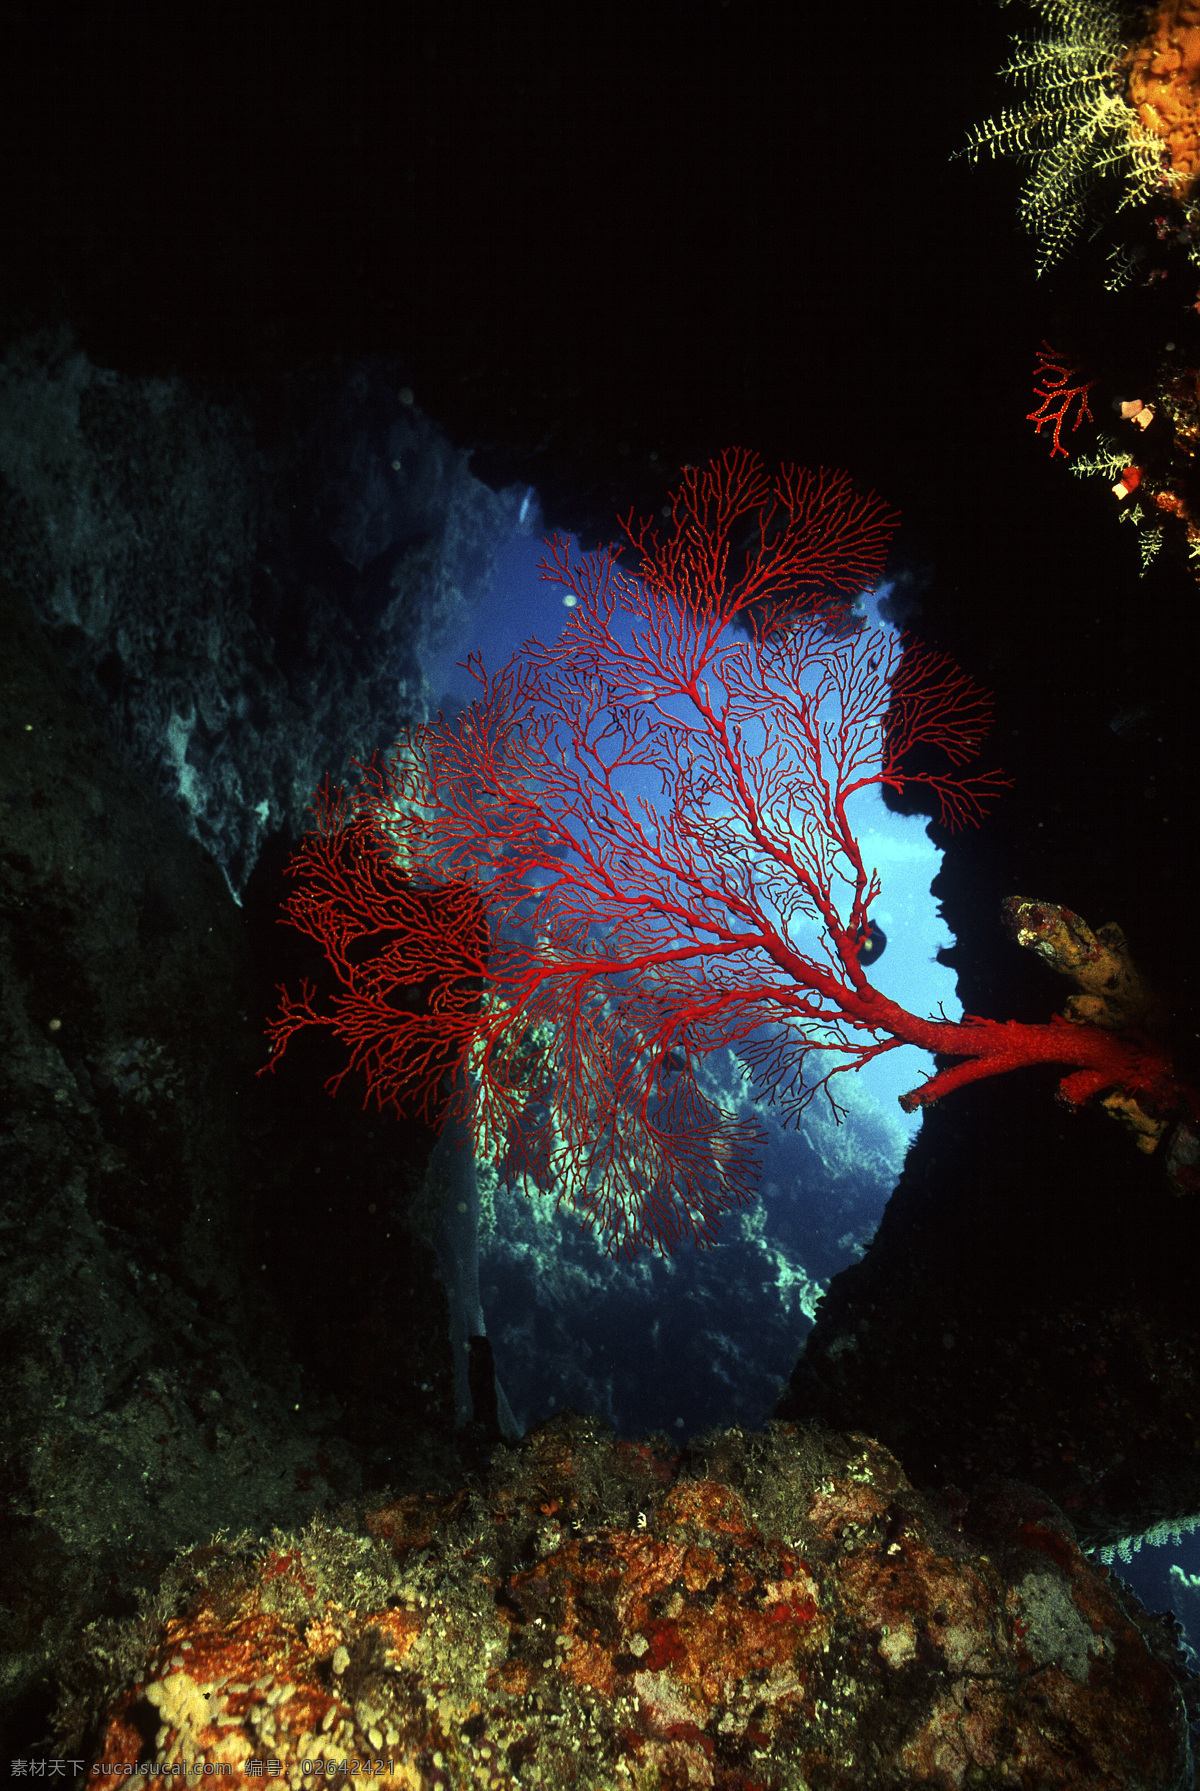 深海免费下载 安静 海胆 海底世界 海星 礁石 潜水员 珊瑚 深海 生物 水母 鱼群 探秘 鱼 生物世界